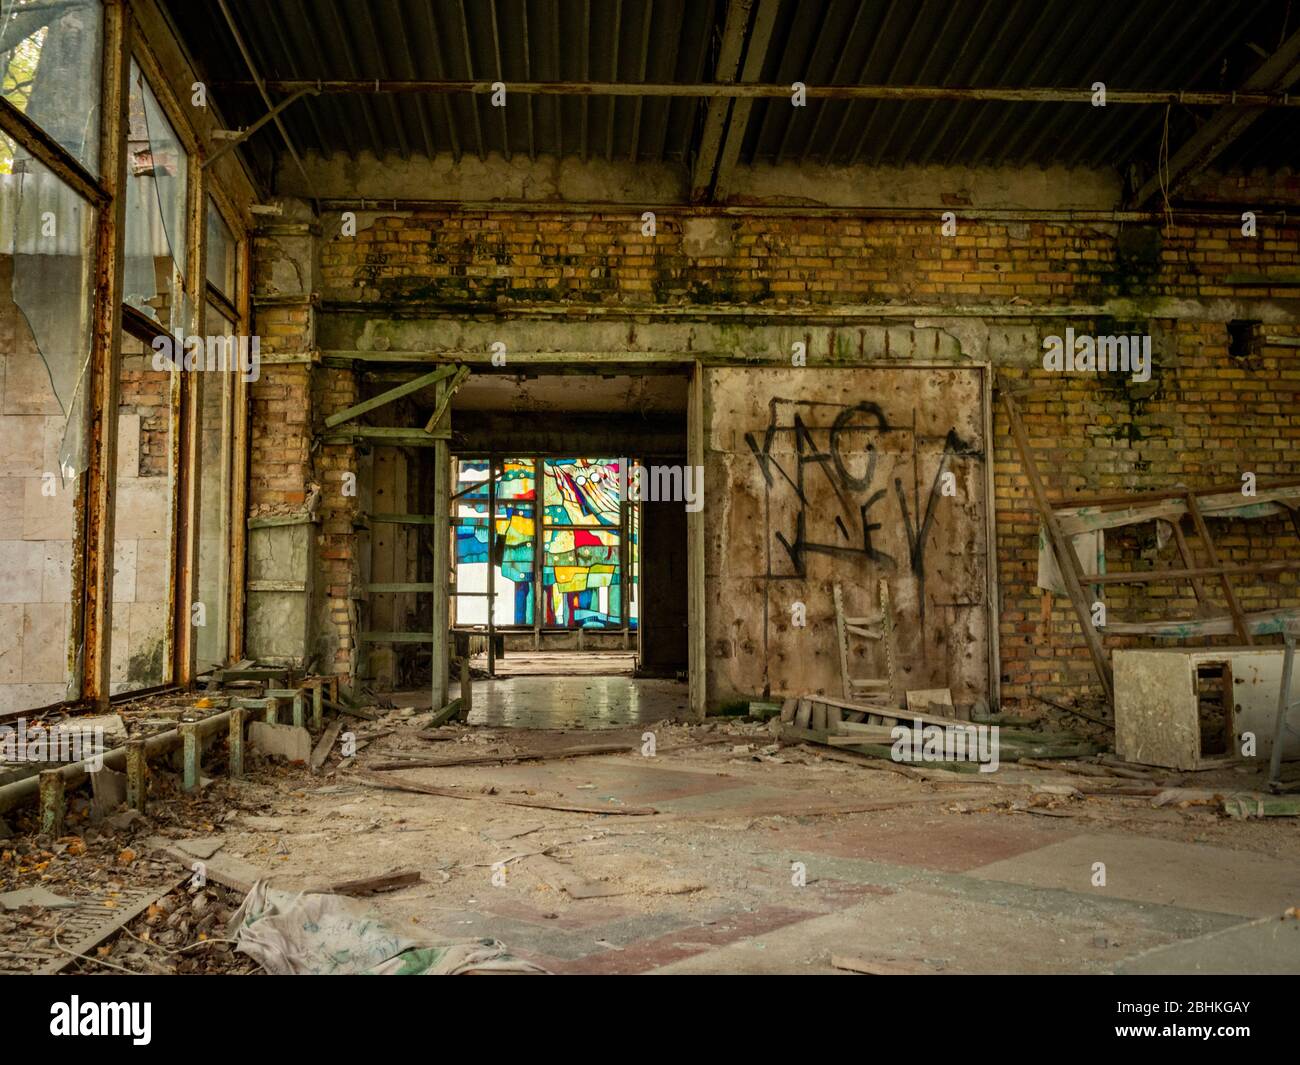 Pripyat/Ucraina - 13/10/2020. Un murale di vetro colorato può essere visto tra le macerie del caffè abbandonato Pripyat sul fiume nella Cernobyl esclusione z Foto Stock